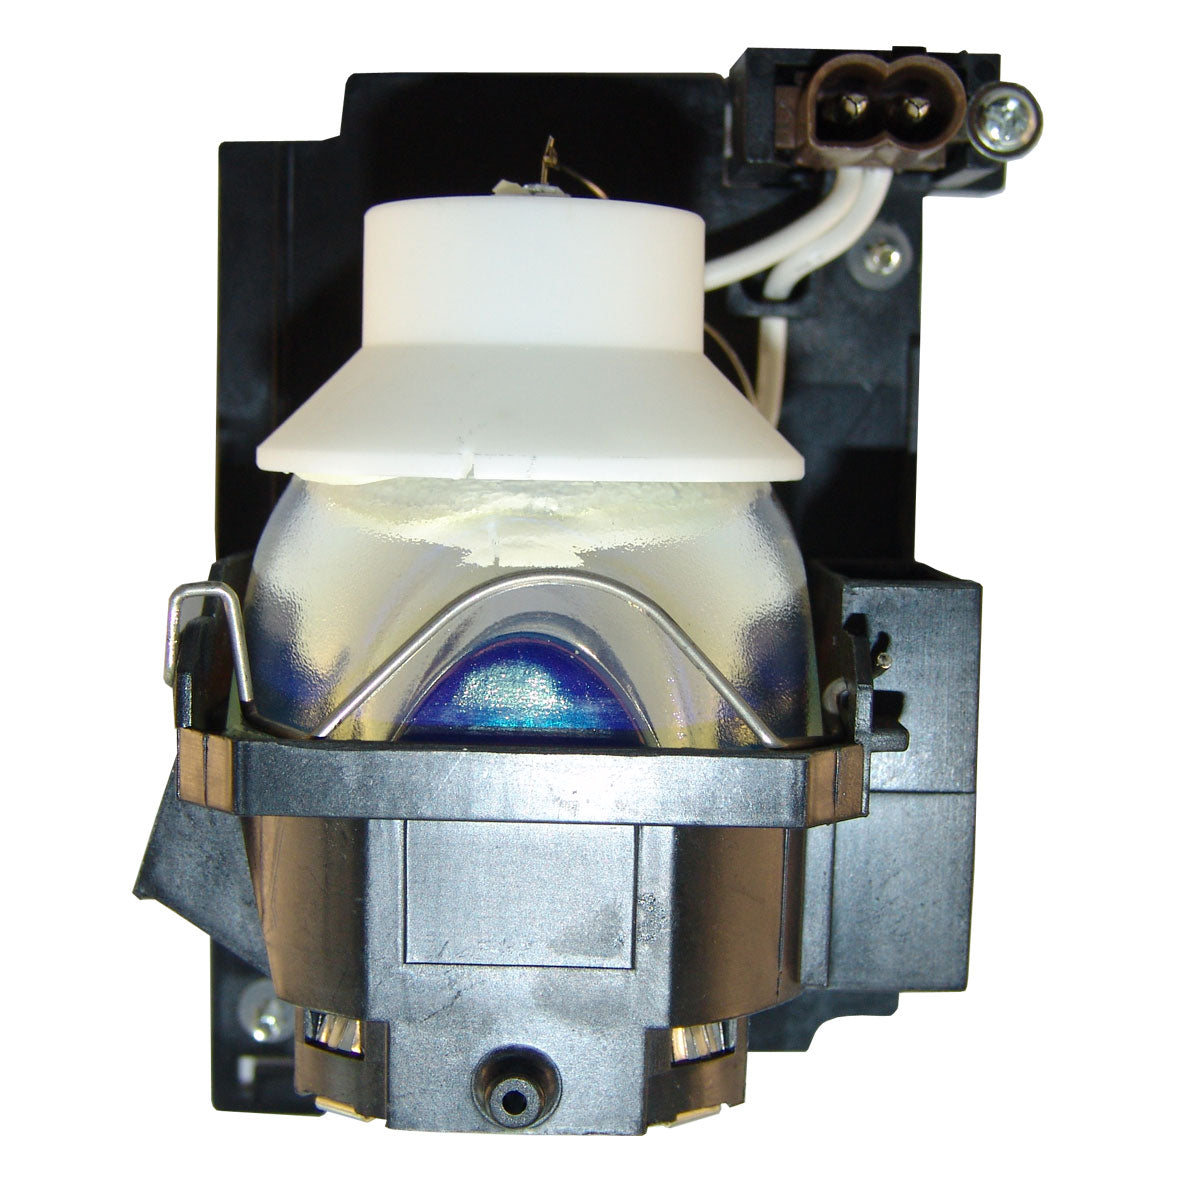 Hitachi DT01055 Compatible Projector Lamp Module